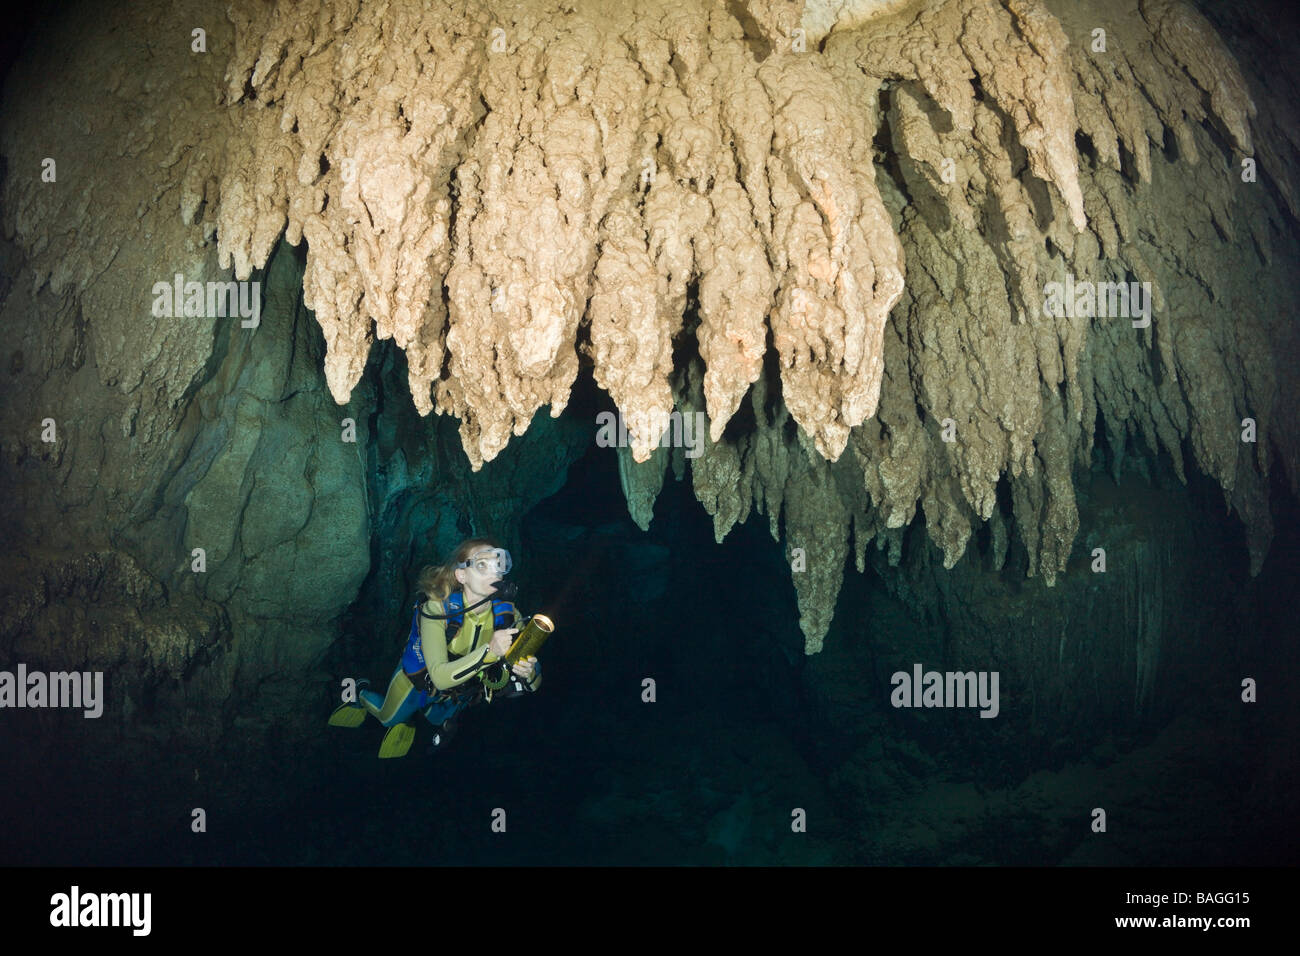 Lustre en plongeur grotte calcaire Micronésie Palau Banque D'Images